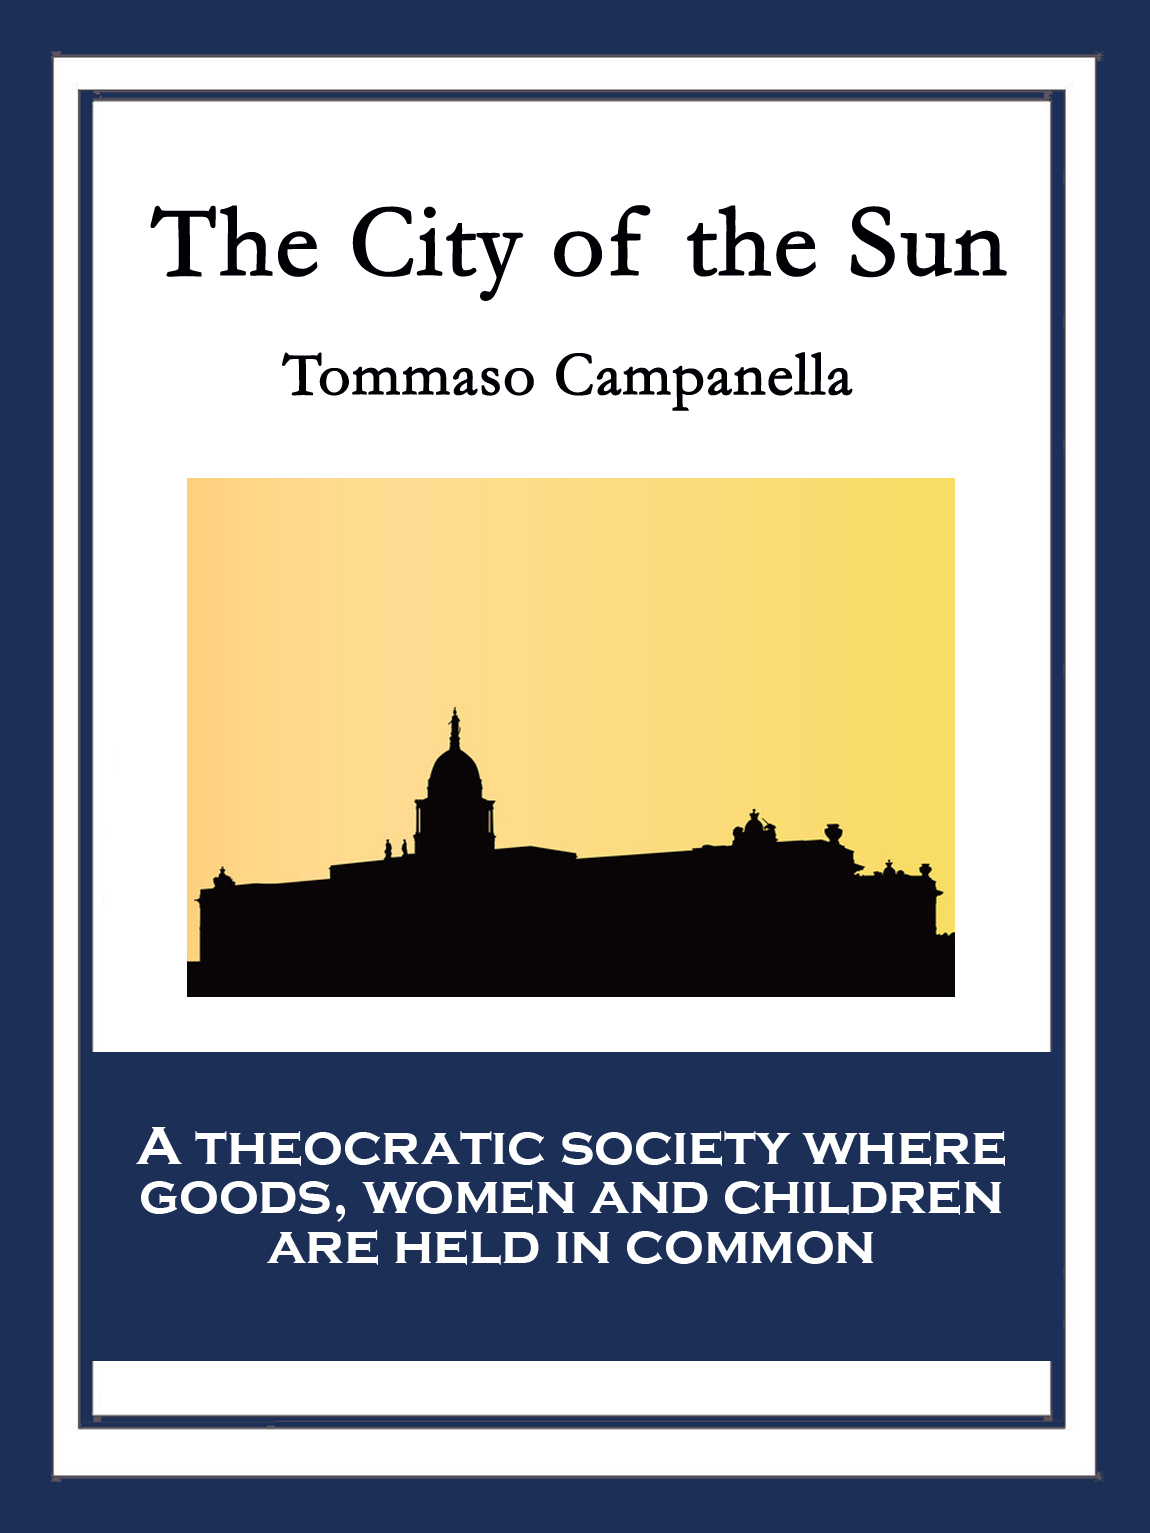 Tommaso Campanella the City of the Sun